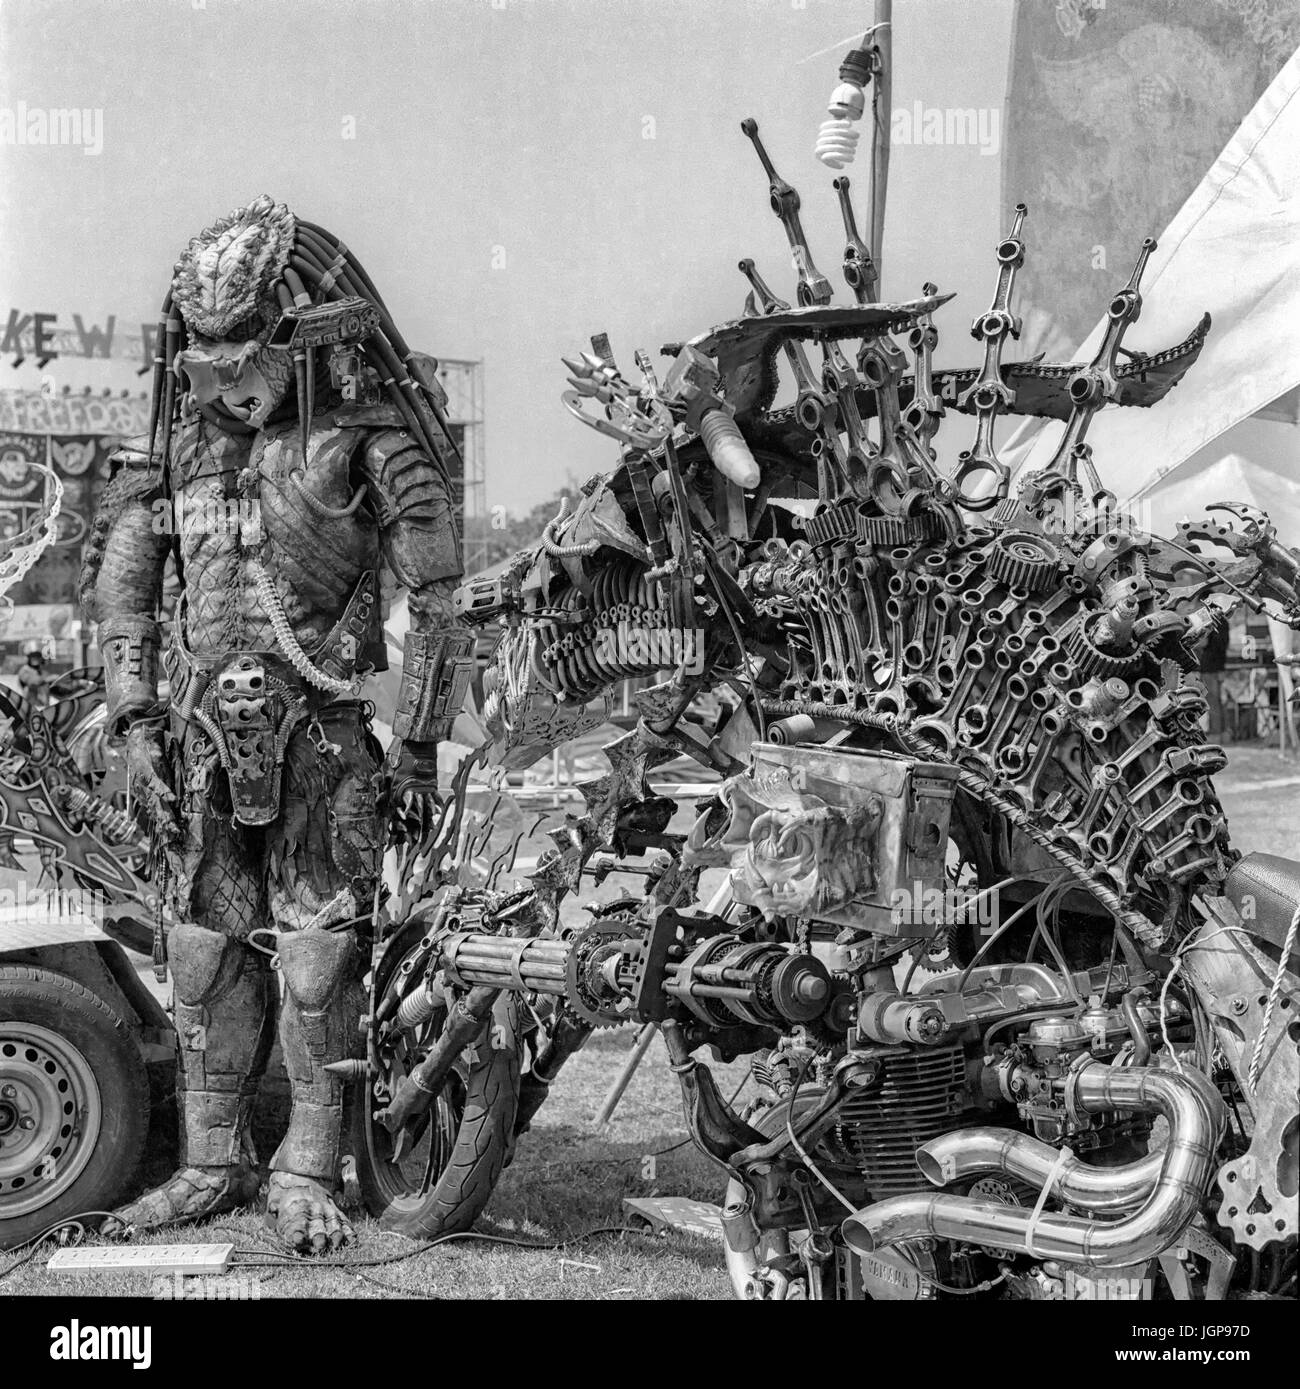 Personnage de film extraterrestre « Predator », composé de pièces de métal et d'une moto extrêmement modifiée. photographie en noir et blanc. Banque D'Images